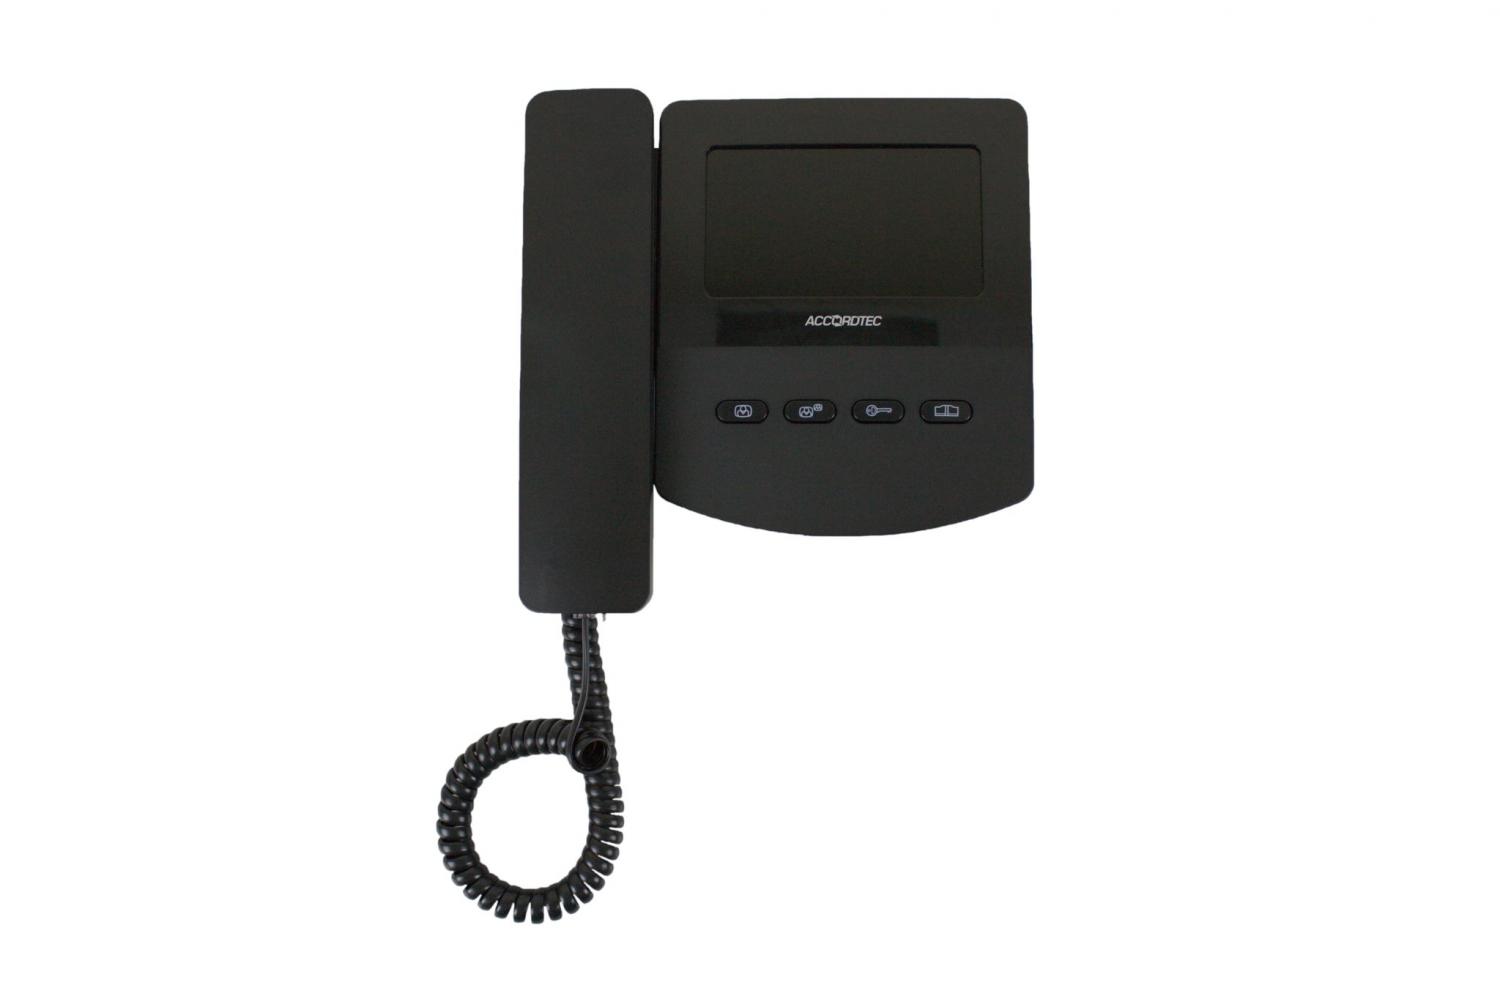 Лучшая цена на AccordTec AT-VD 433C K EXEL (черный) мониторы видеодомофонов купите с доставкой на дом #оставайтесьдома